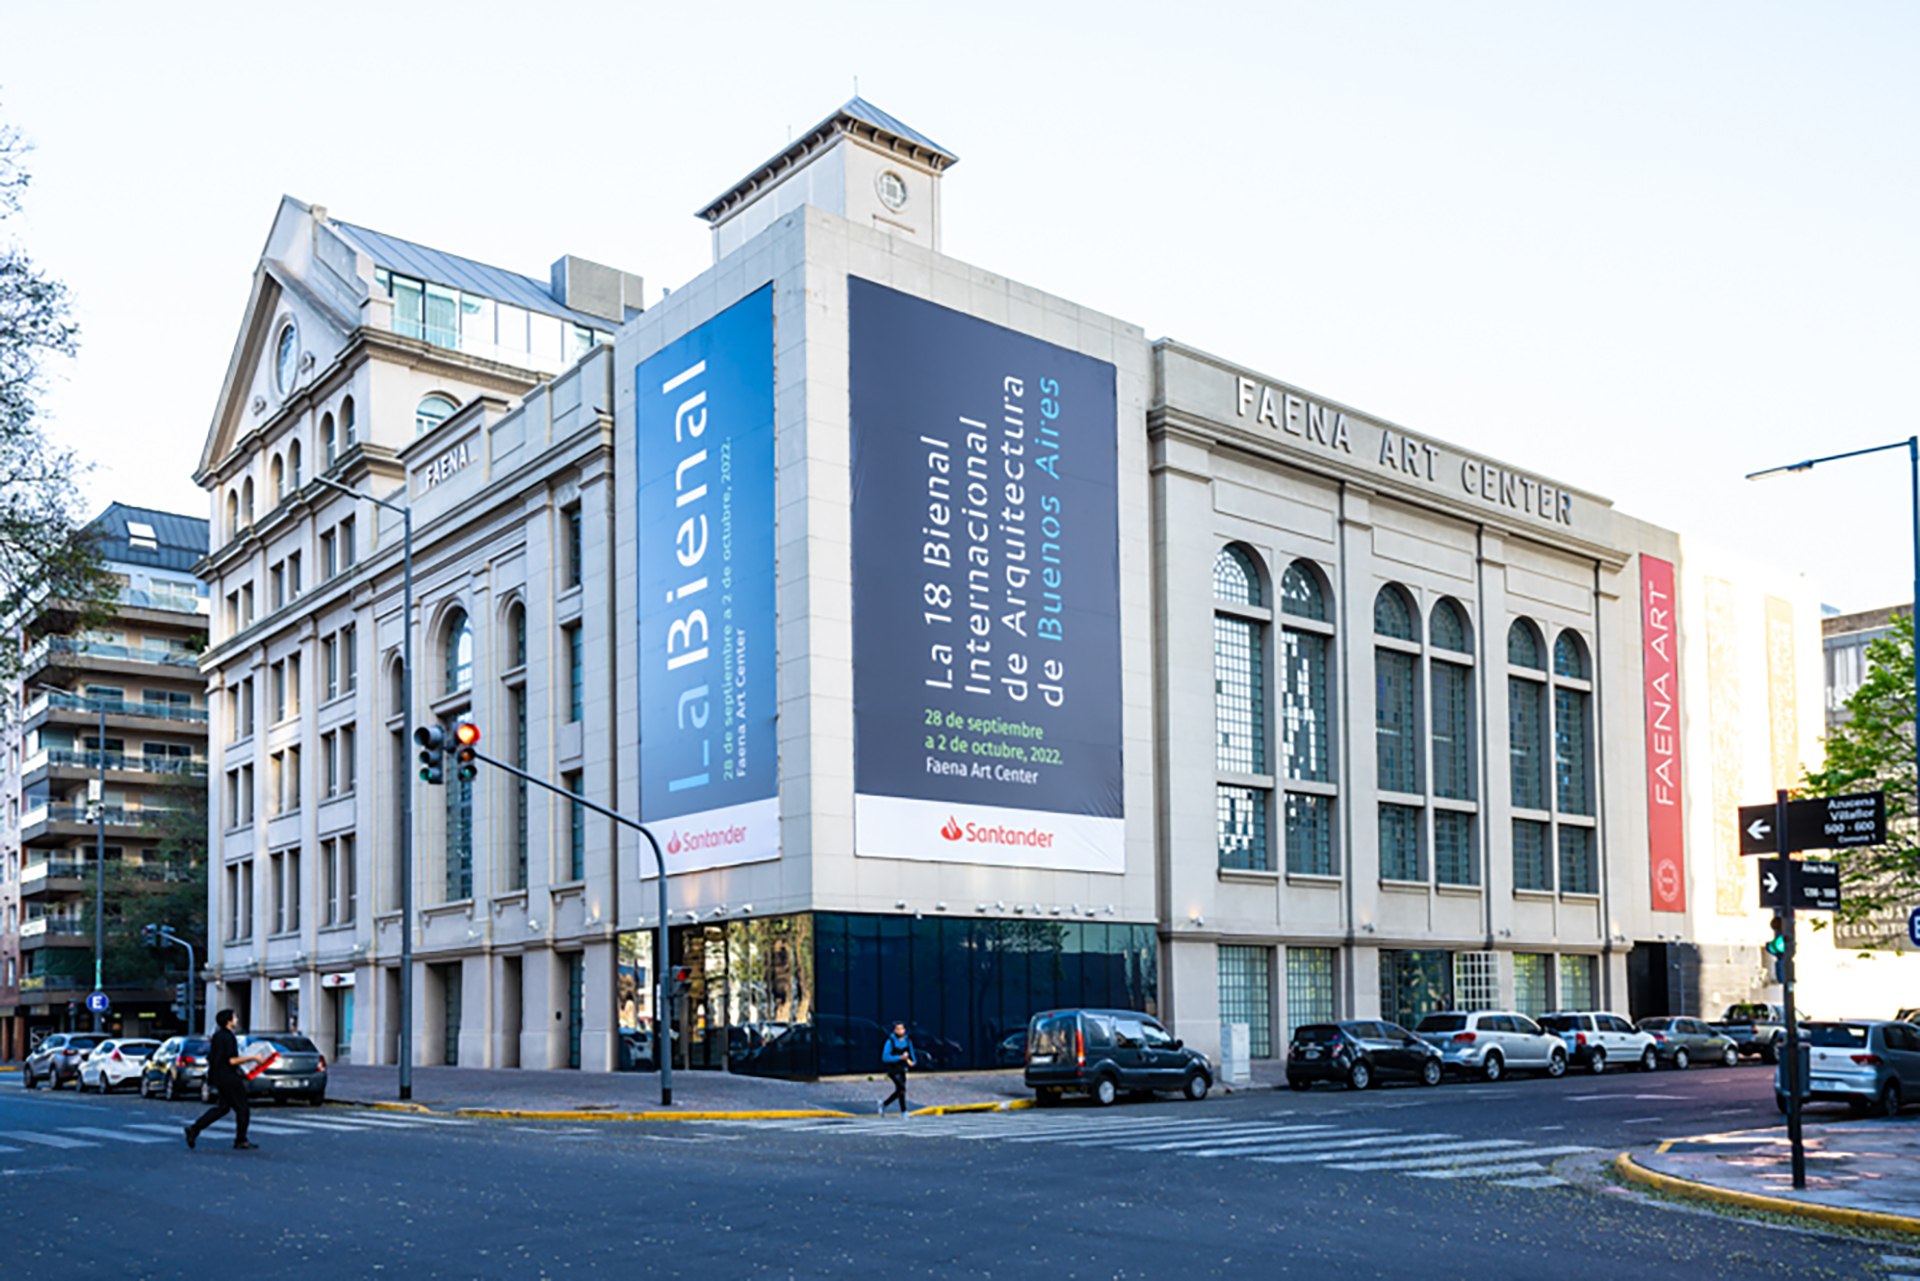 La sede del Faena Center for the Arts, tre anni dopo la Biennale di Architettura di Buenos Aires